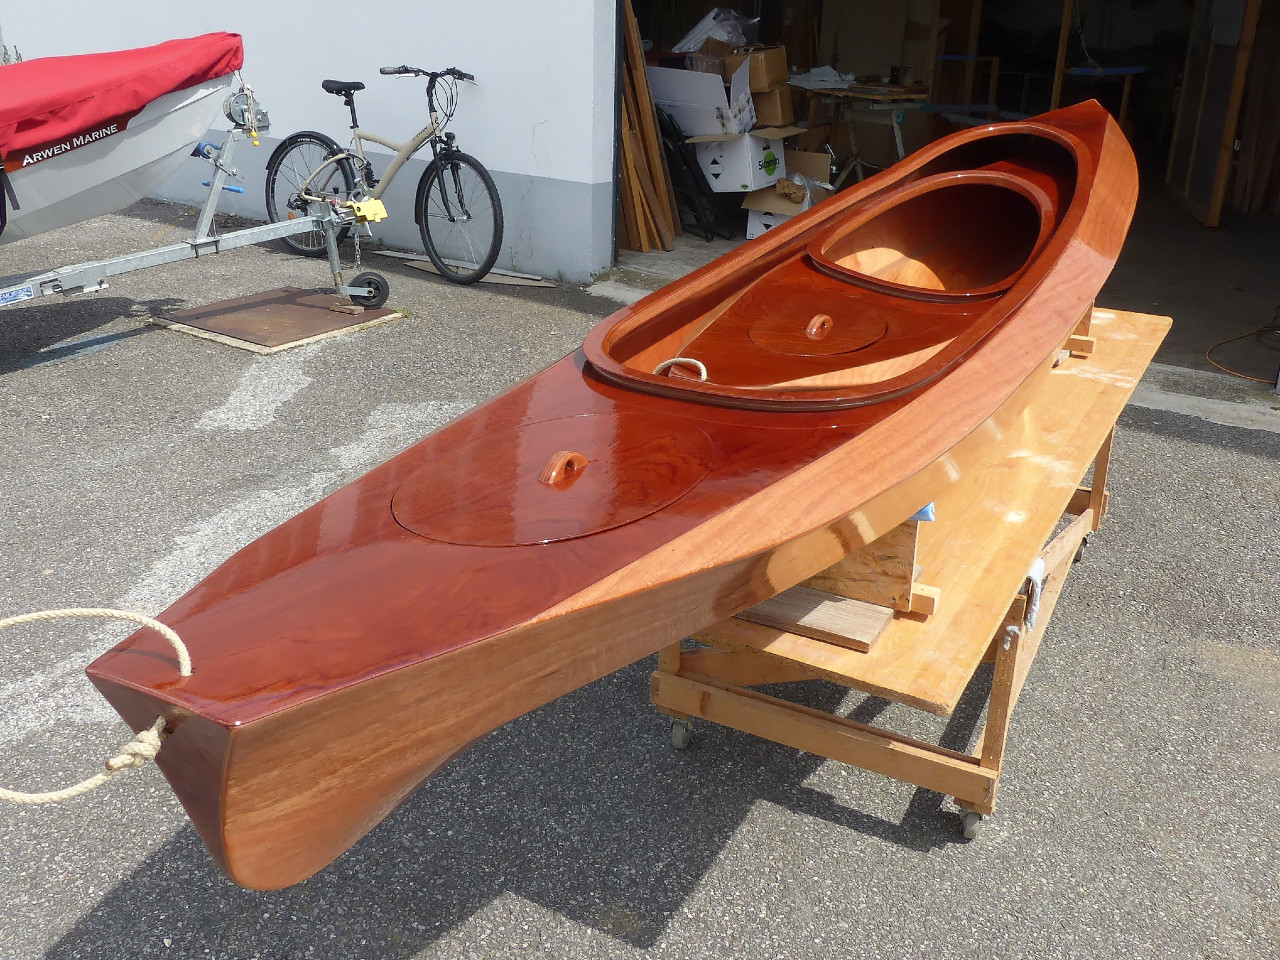 Petite expérience amusante : le Wood Duck Double peut contenir le Wood Duckling ! Oui, je suis d'accord que cela a peu d'usages pratiques... A moins que de jeunes parents veuillent pouvoir facilement transporter un petit kayak pour un enfant en plus du leur ! 